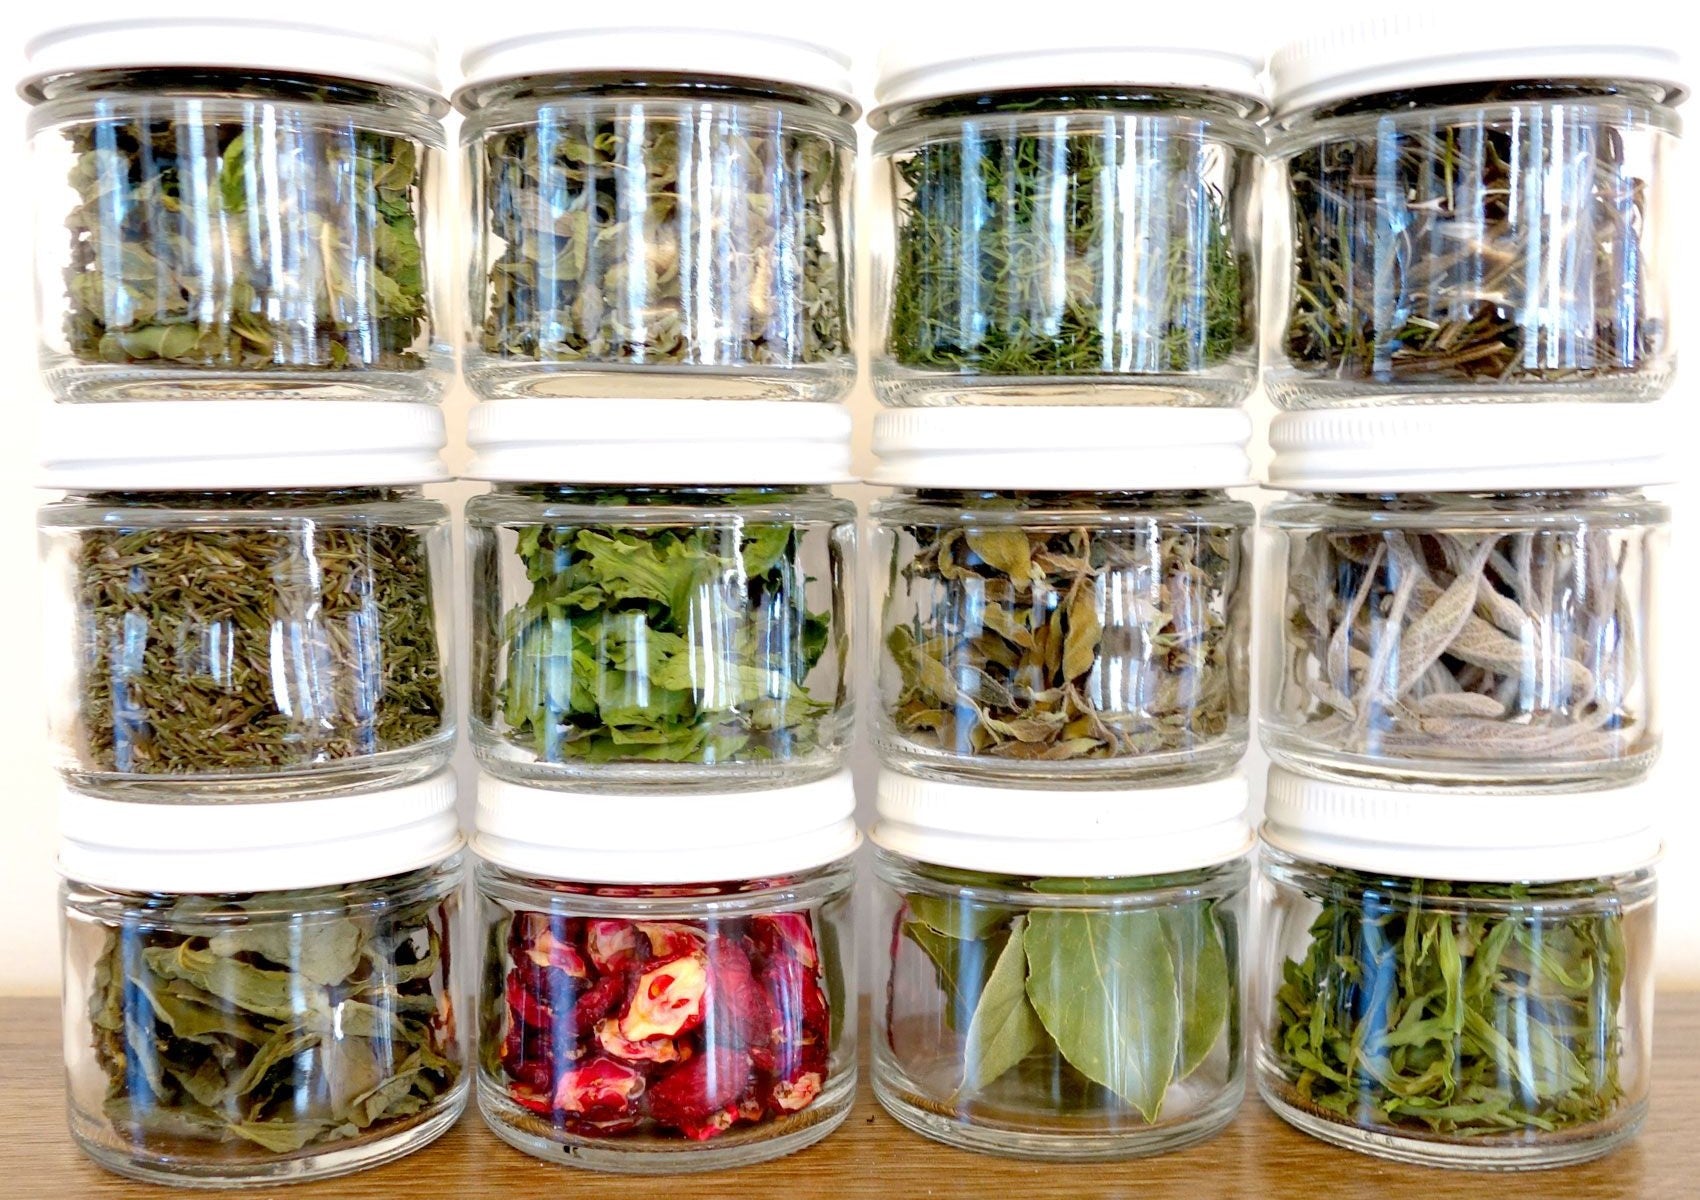 Various dried herbs in glass storage jars